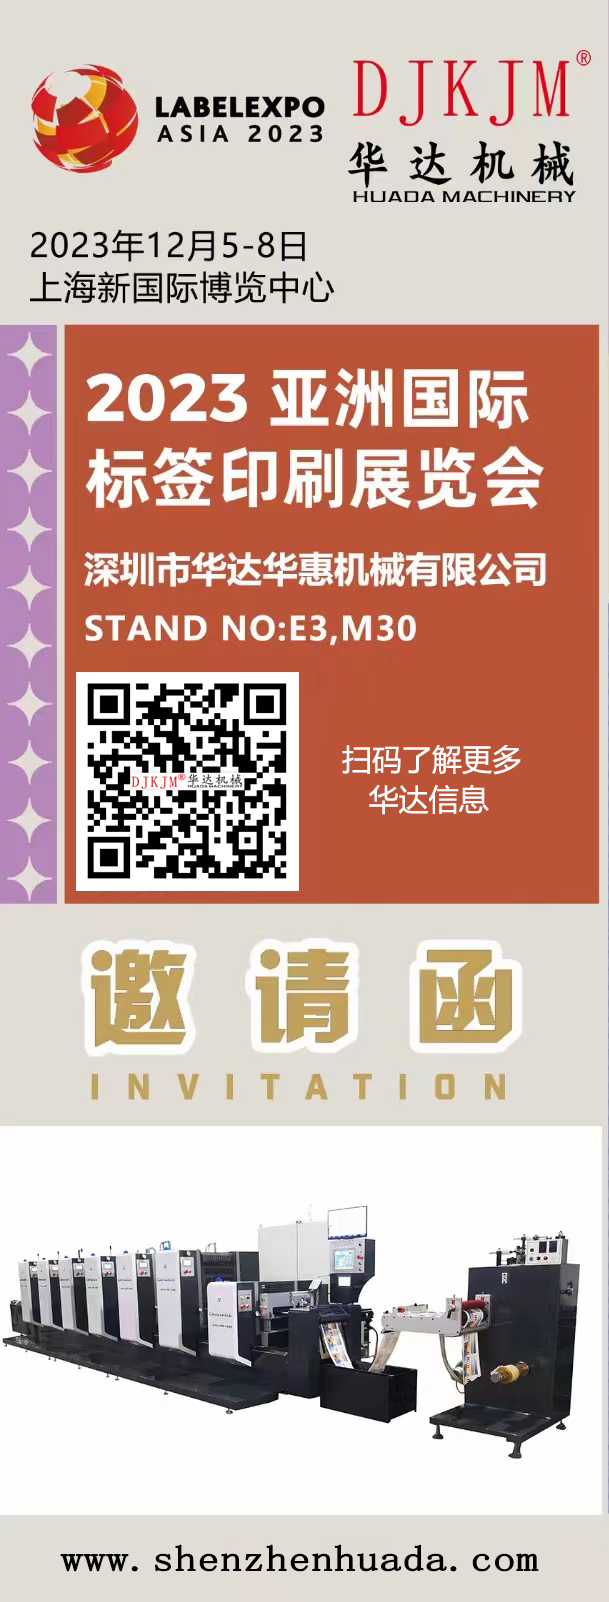 华达华惠-2023亚洲国际标签印刷展览会